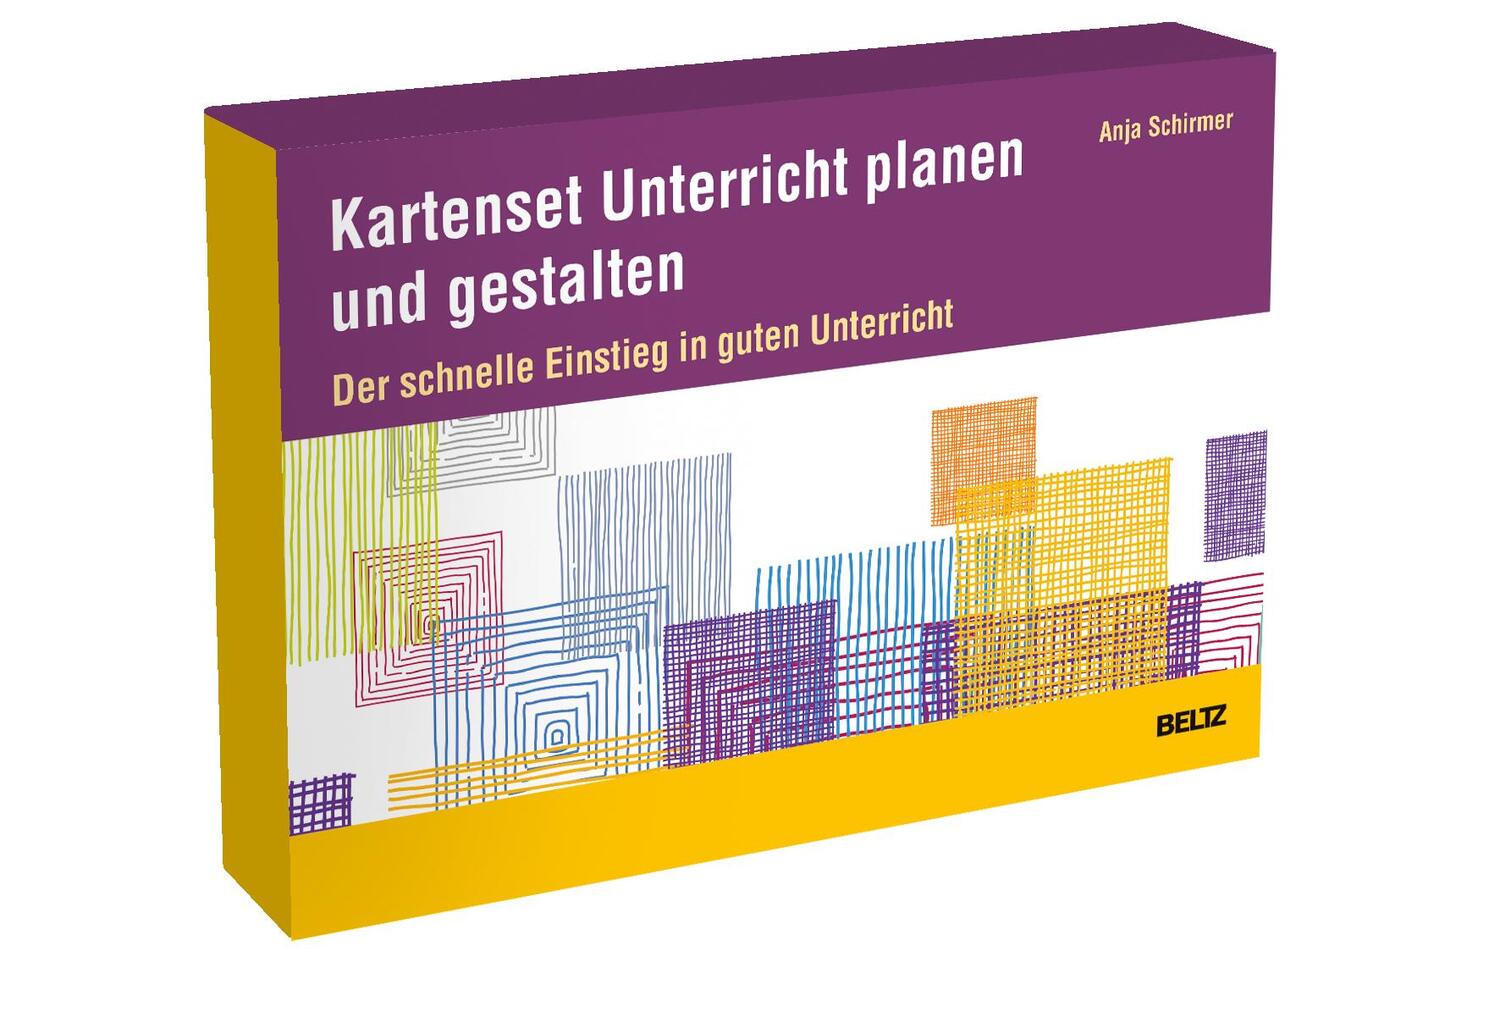 Cover: 4019172200329 | Kartenset Unterricht planen und gestalten | Anja Schirmer | Box | 2021